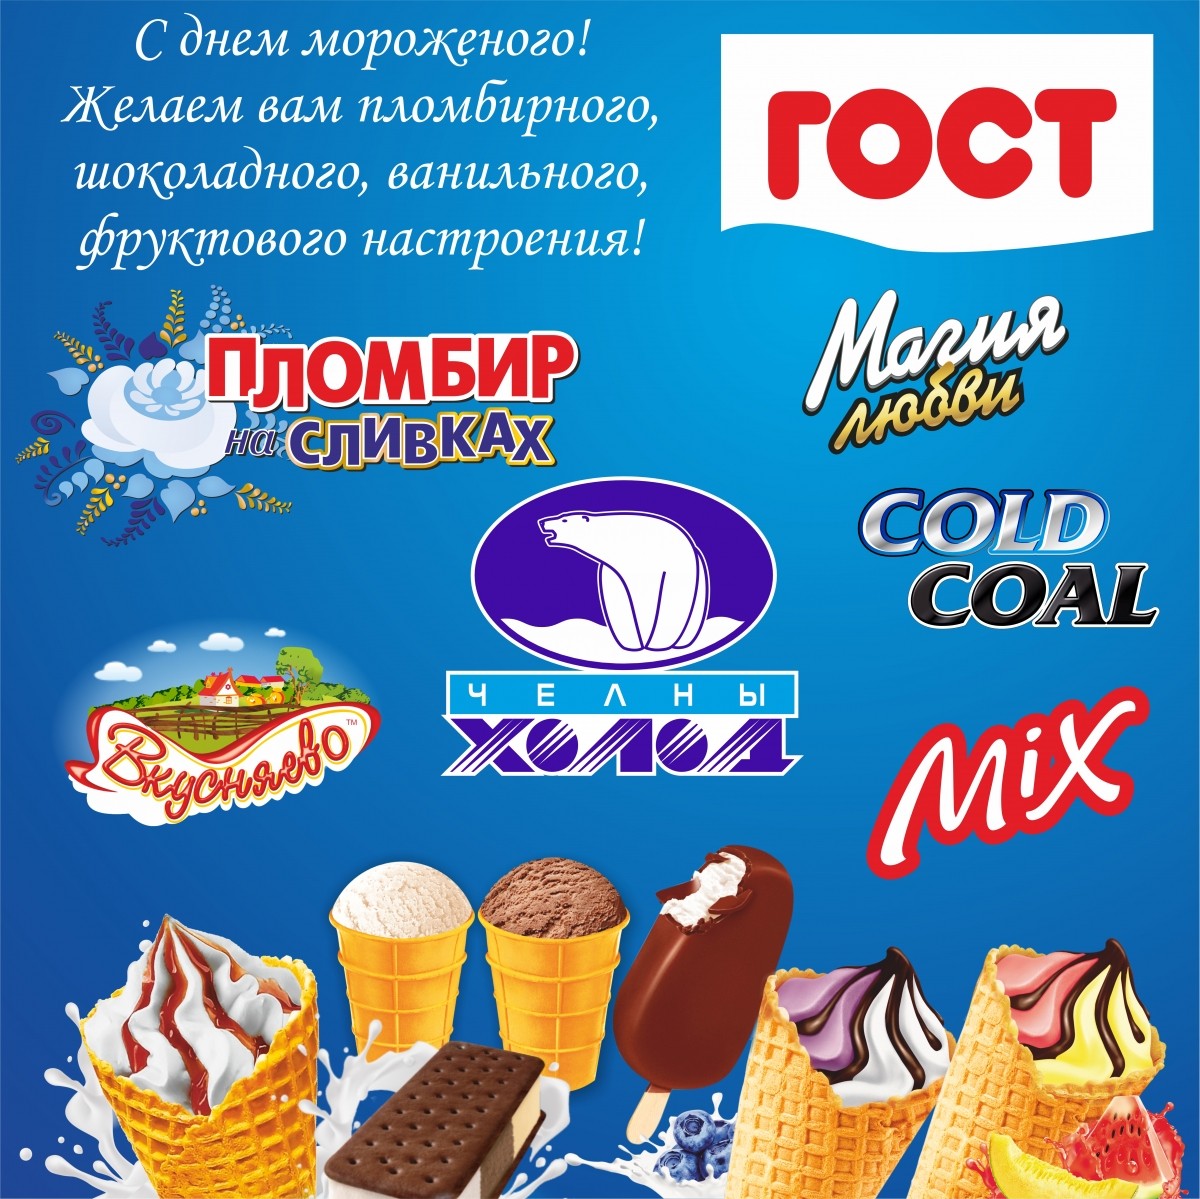 ОАО "Челны Холод" поздравляет с днем мороженого!